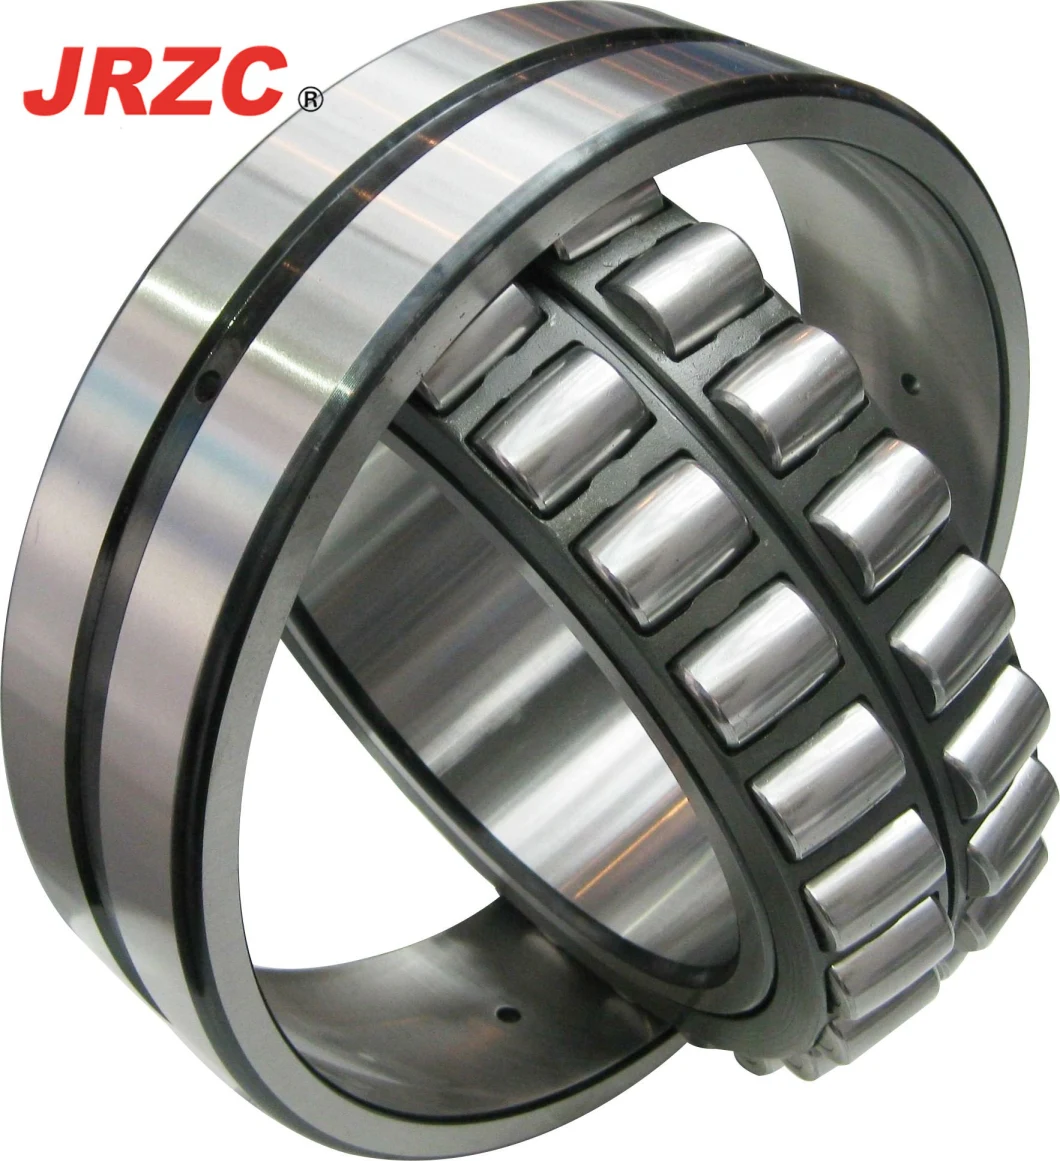 Timken SKF Bearing, NSK NTN Koyo Bearing NACHI Taper/Cylindrical Roller Spherical Roller Bearings